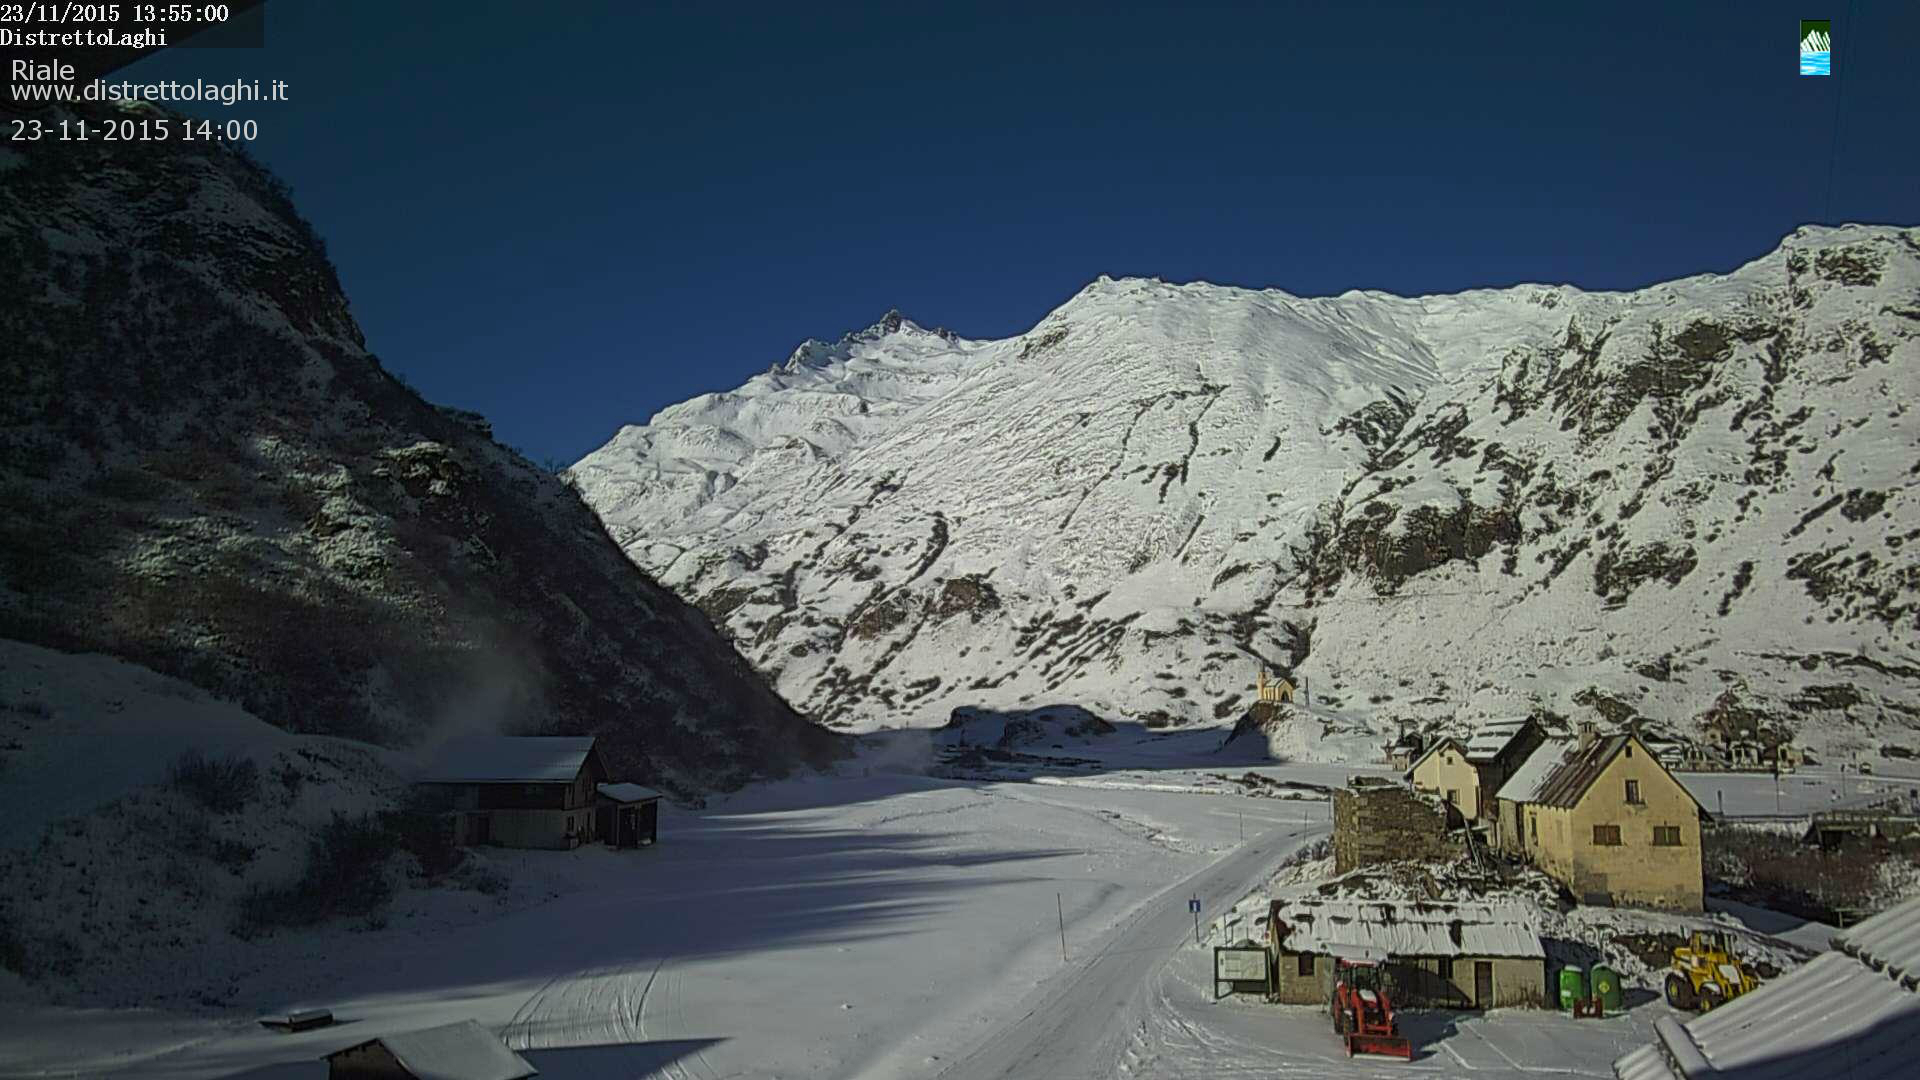 Montagna: domenica torna “sicuri sulla neve”, la manifestazione del CAI per evitare incidenti in montagna